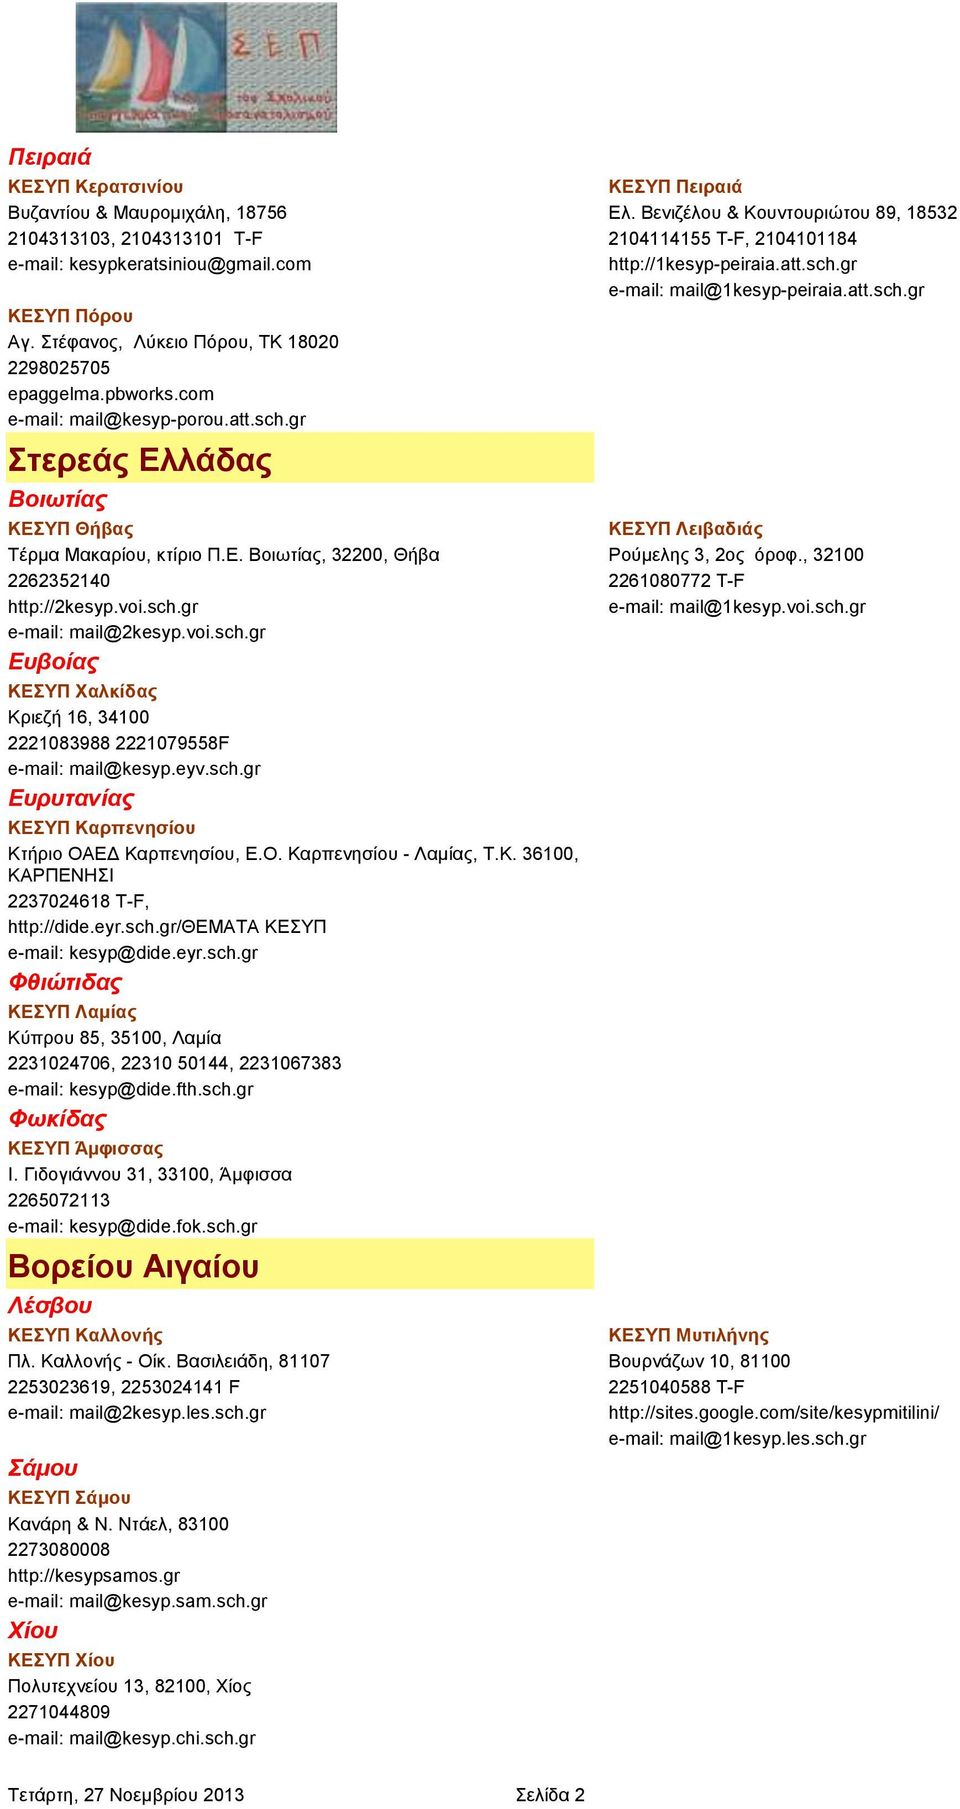 eyv.sch.gr Ευρυτανίας ΚΕΣΥΠ Καρπενησίου Κτήριο ΟΑΕΔ Καρπενησίου, Ε.Ο. Καρπενησίου - Λαμίας, Τ.Κ. 36100, ΚΑΡΠΕΝΗΣΙ 2237024618 T-F, http://dide.eyr.sch.gr/θεματα ΚΕΣΥΠ e-mail: kesyp@dide.eyr.sch.gr Φθιώτιδας ΚΕΣΥΠ Λαμίας Κύπρου 85, 35100, Λαμία 2231024706, 22310 50144, 2231067383 e-mail: kesyp@dide.